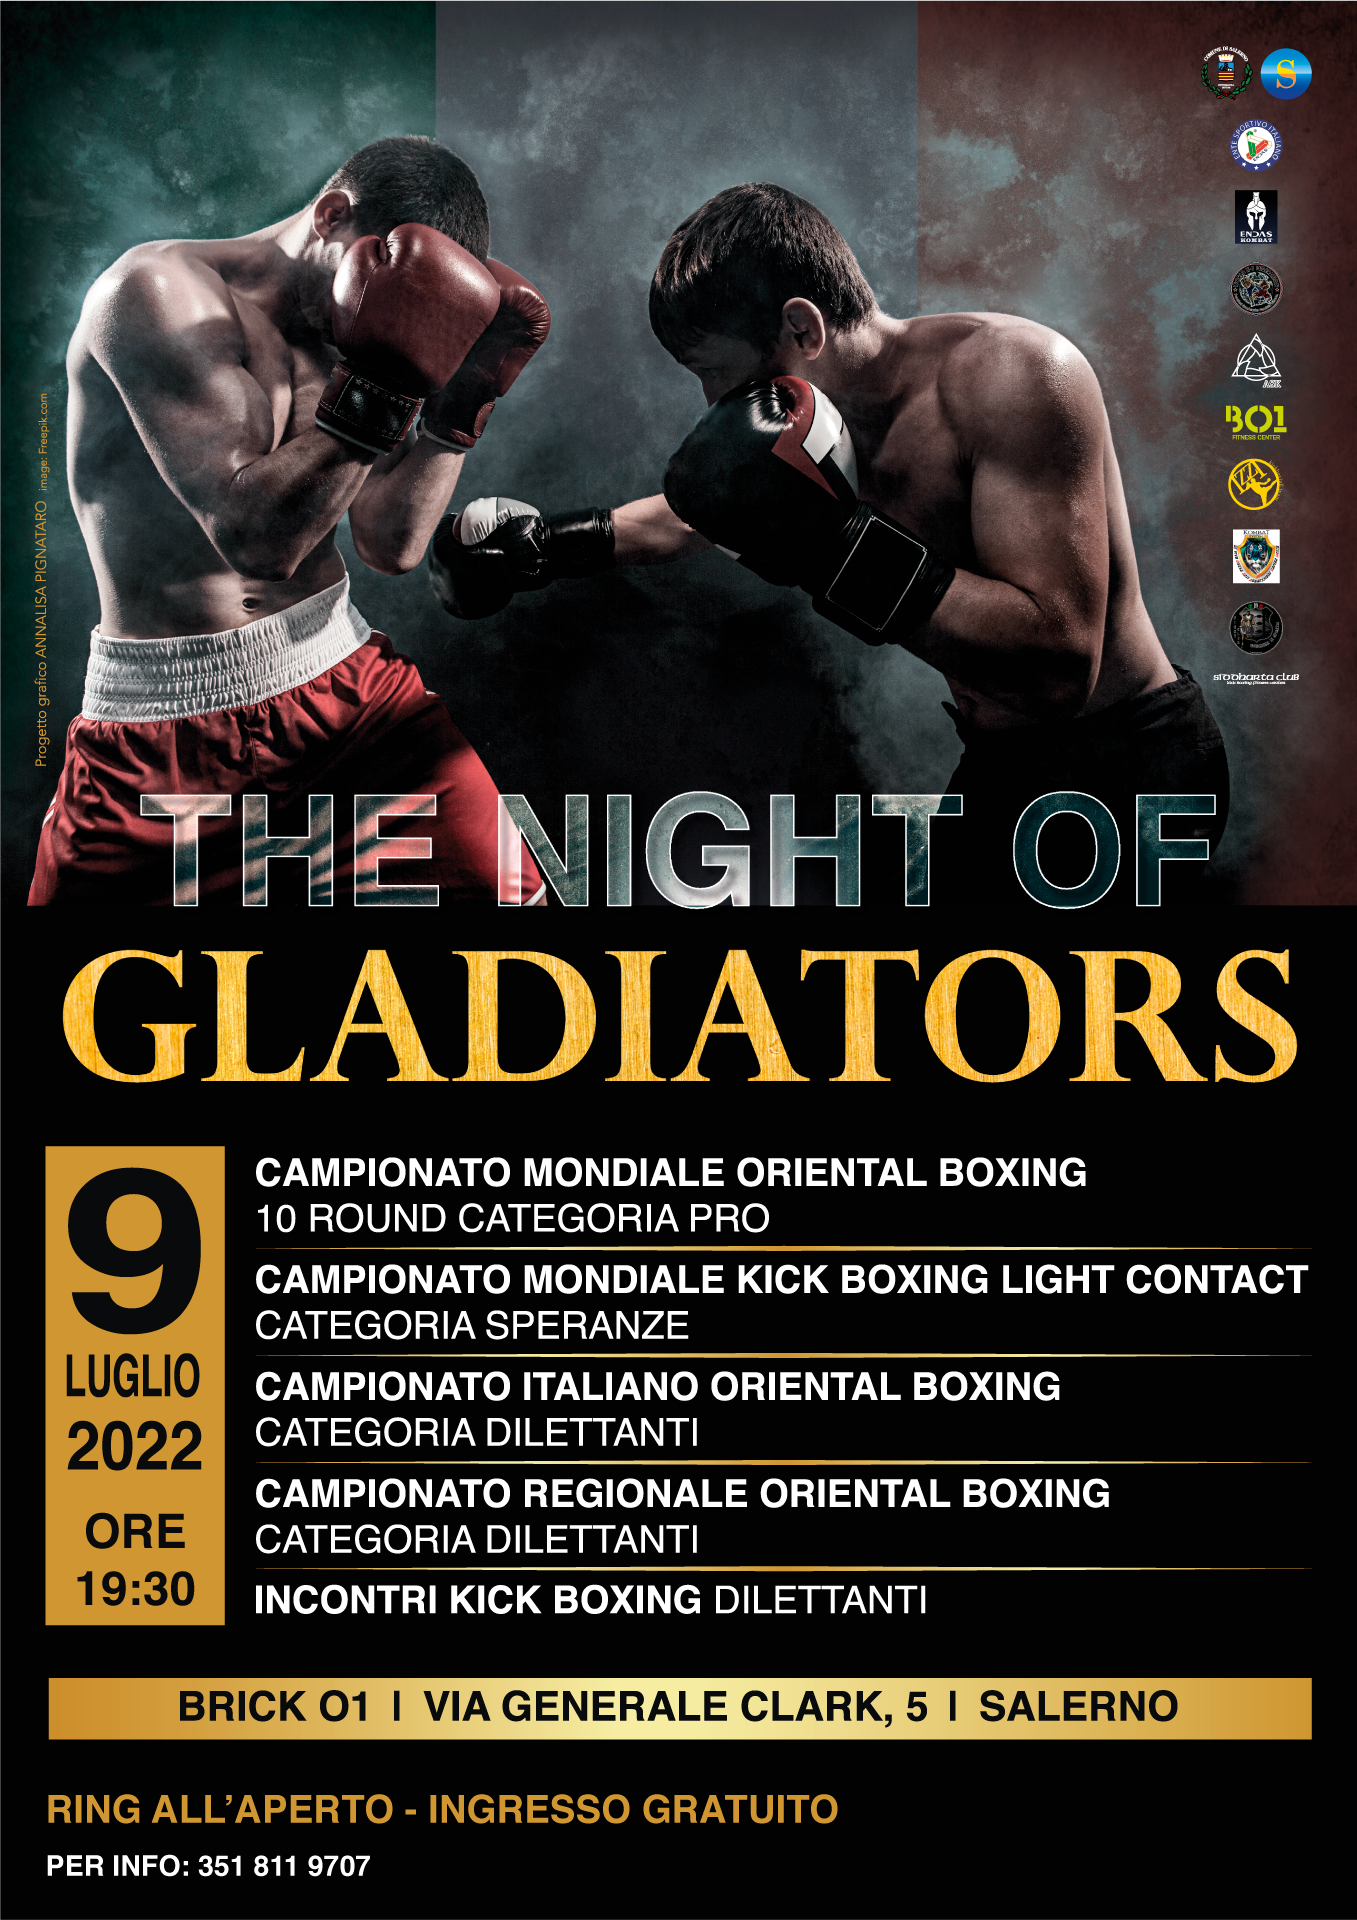 Salerno: “The night of gladiators – mondiale Oriental Boxing” a Centro sportivo “Brick 01